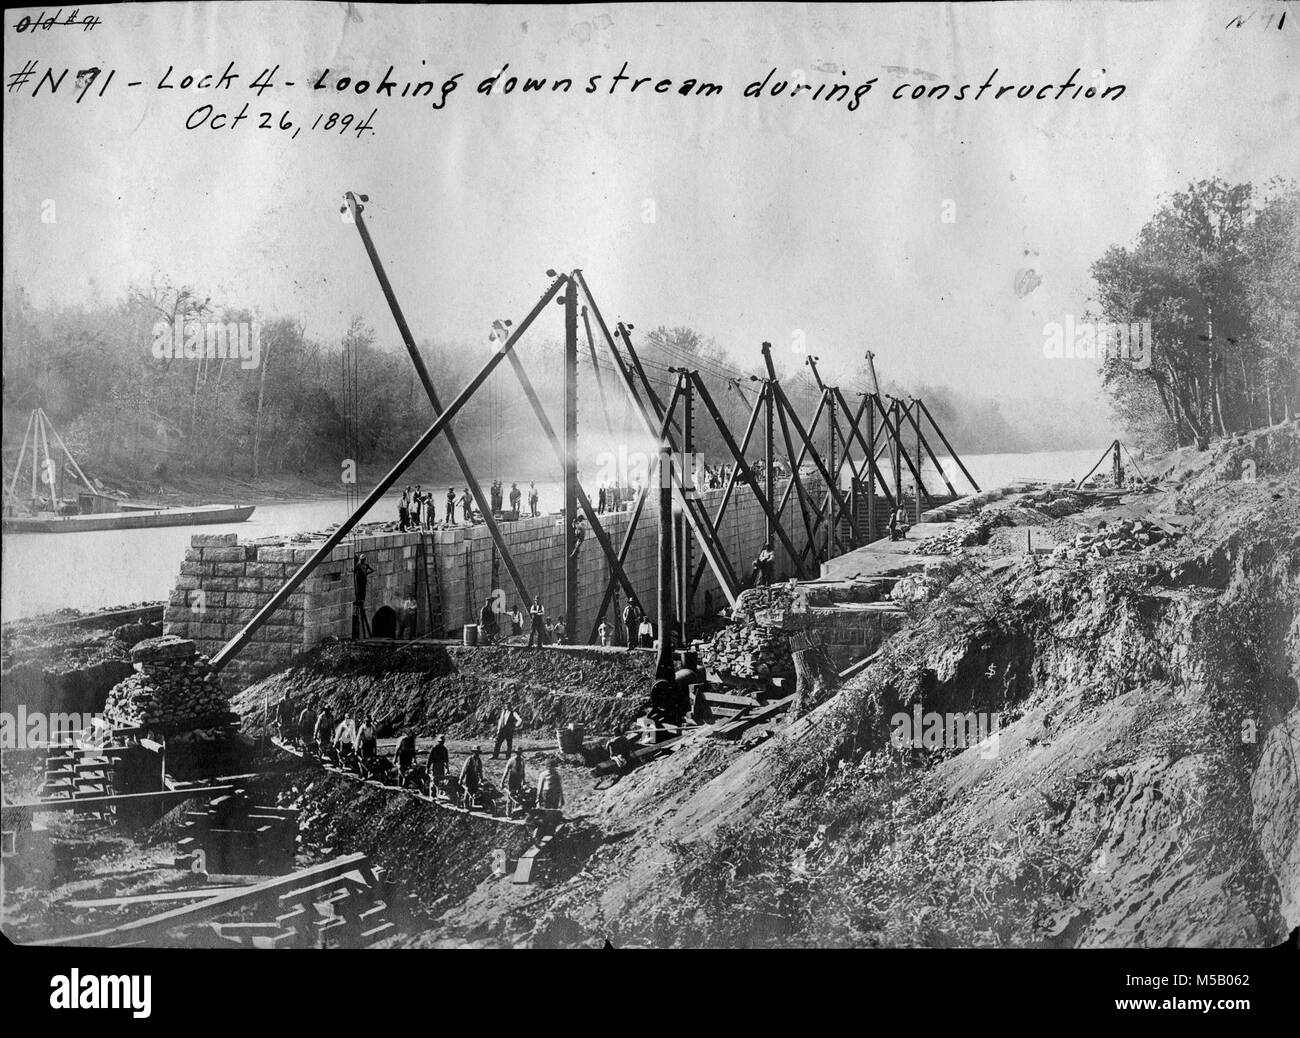 Una disposizione di Derrick è nella fossa durante la costruzione della serratura 4 ott. 26, 1894 il Cumberland River in Tennessee. La serratura e diga sono stati costruiti per stabilire un canale di navigazione. La serratura e diga sono stati sostituiti da oggi il moderno sistema di dighe. (USACE Foto Stock